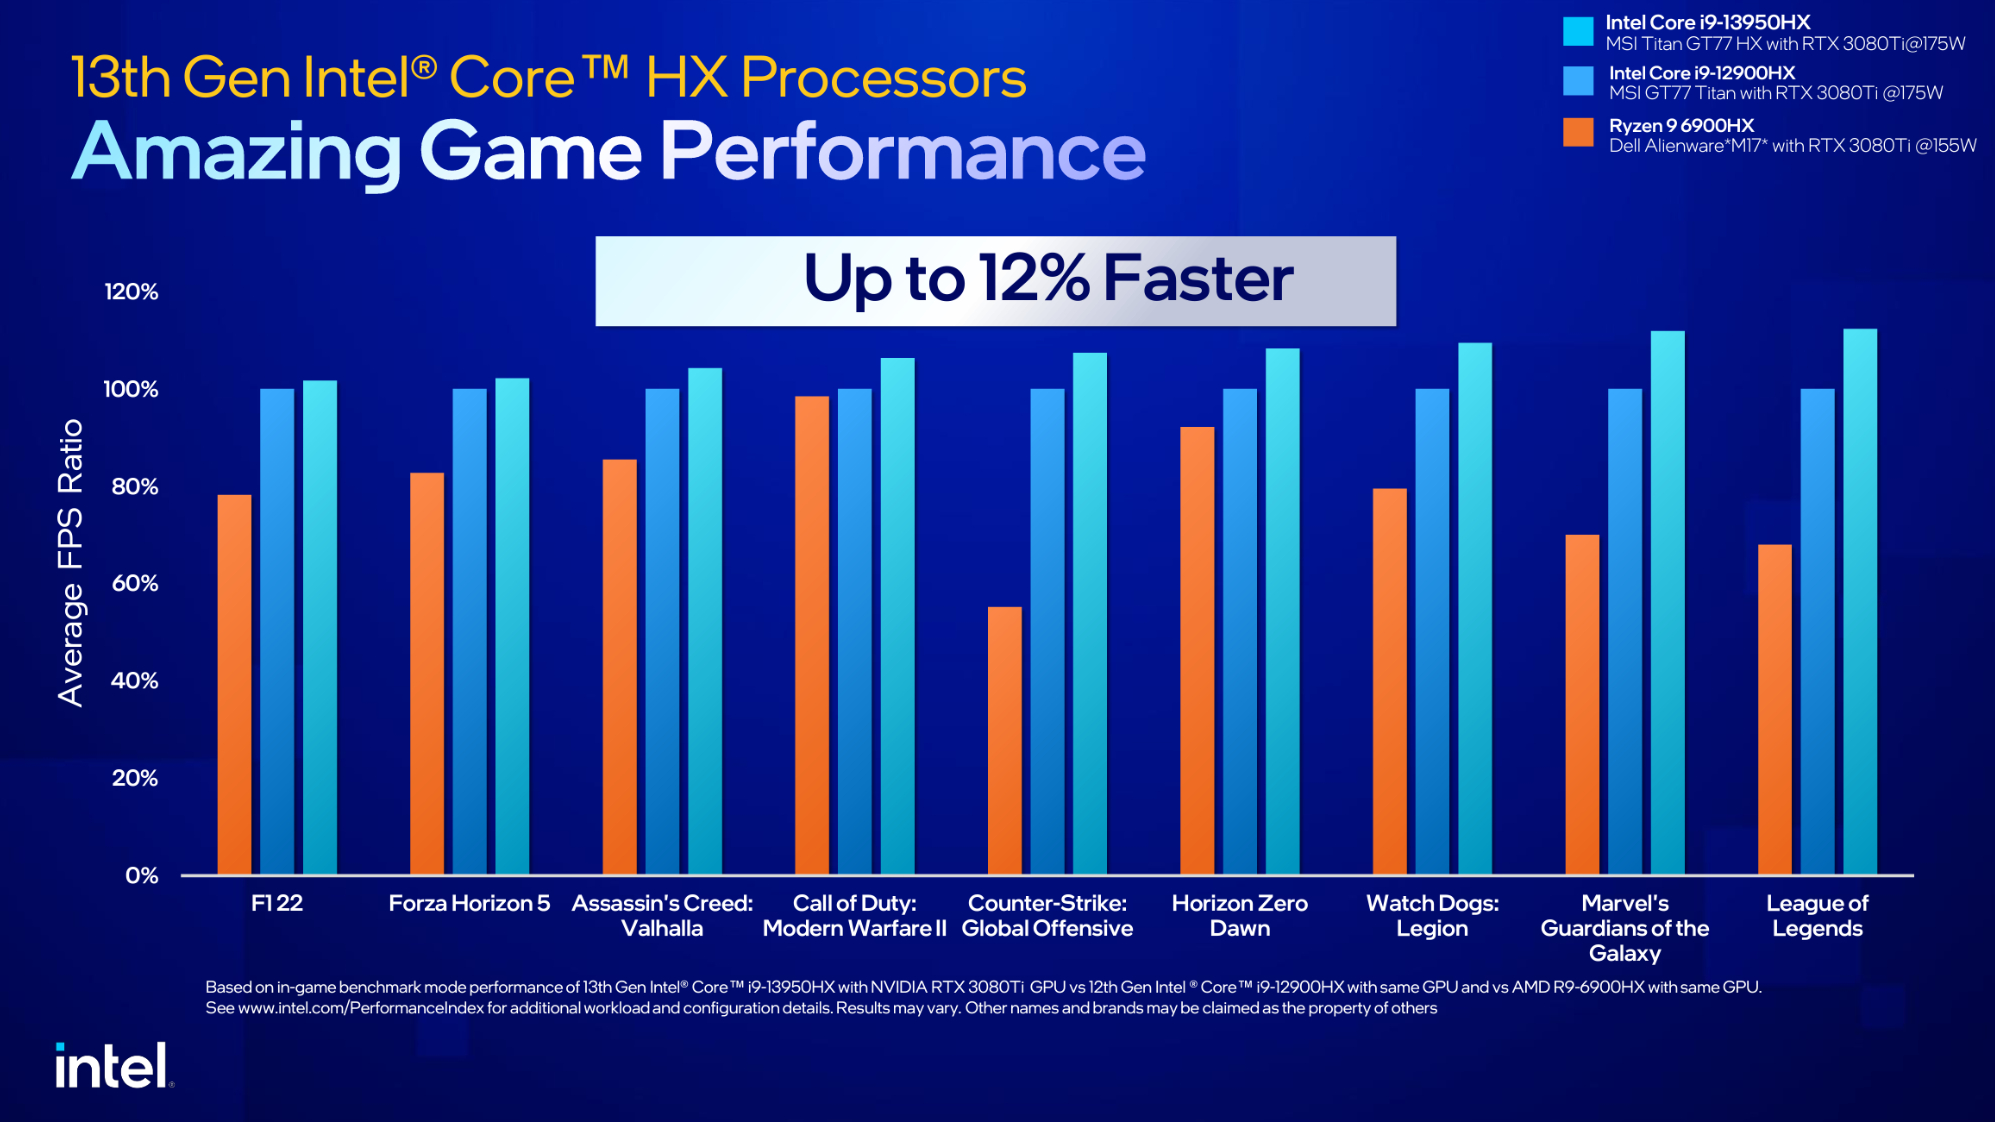 Diapositive sur les performances du processeur Intel 13e génération Core HX Series.